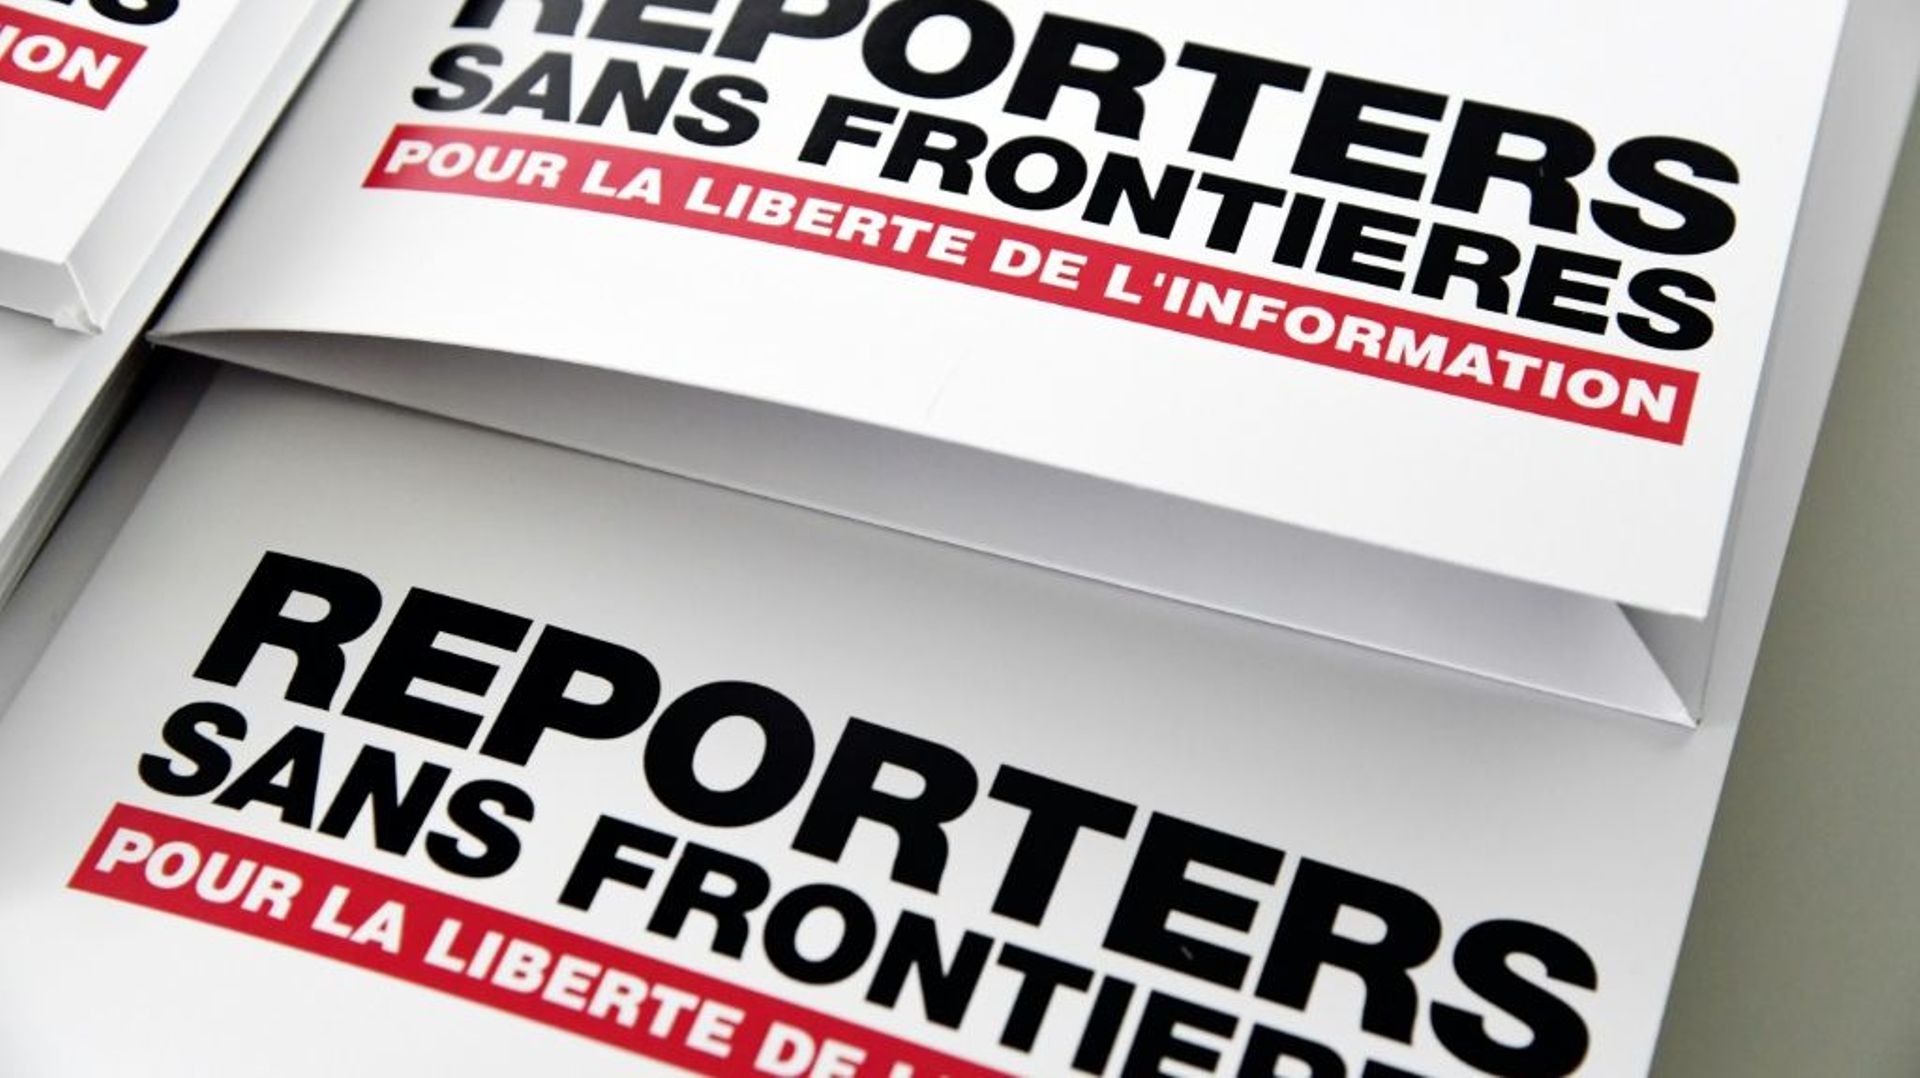 L'ONG Reporters sans frontières (RSF) appelle à "protéger le droit d'informer", alors qu'au "moins sept journalistes ont été agressés et d'autres menacés" pendant des manifestations contre le pass sanitaire